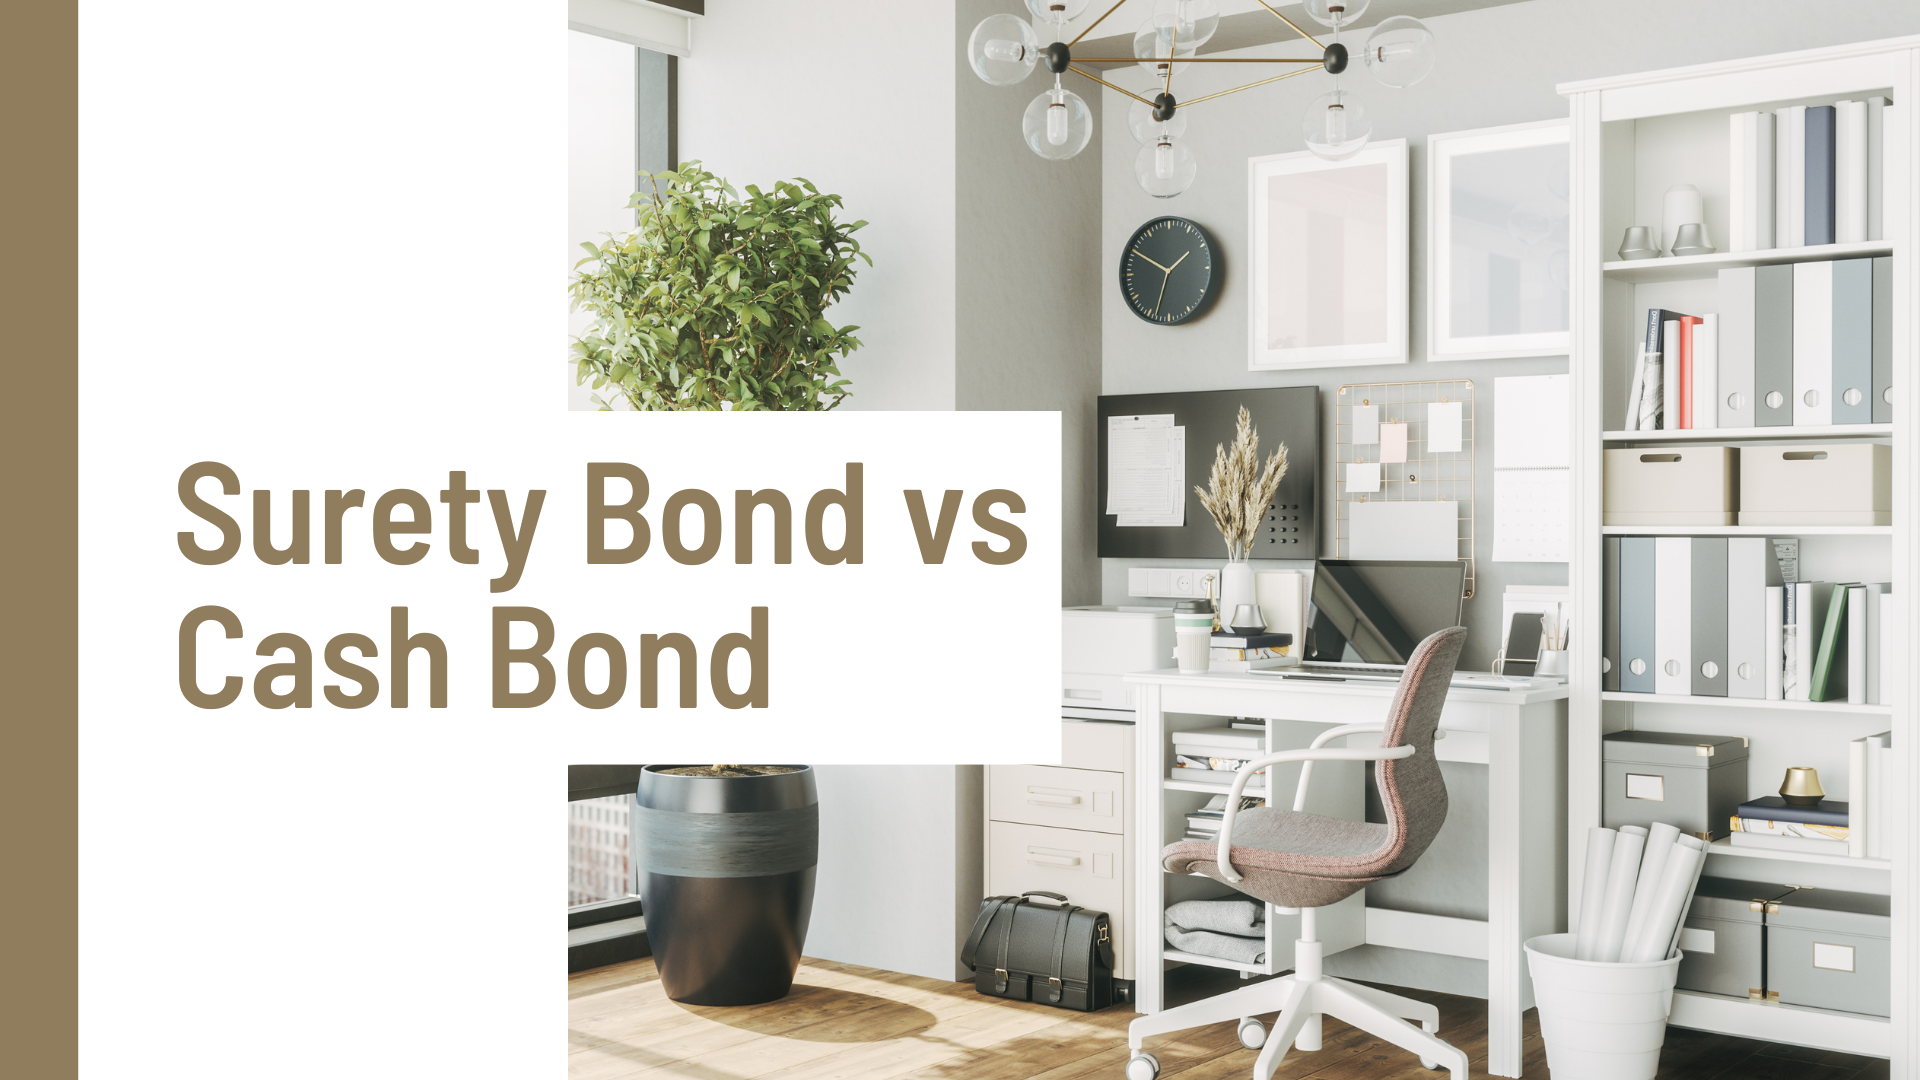 Surety Bond-Surety Bond vs Cash Bond